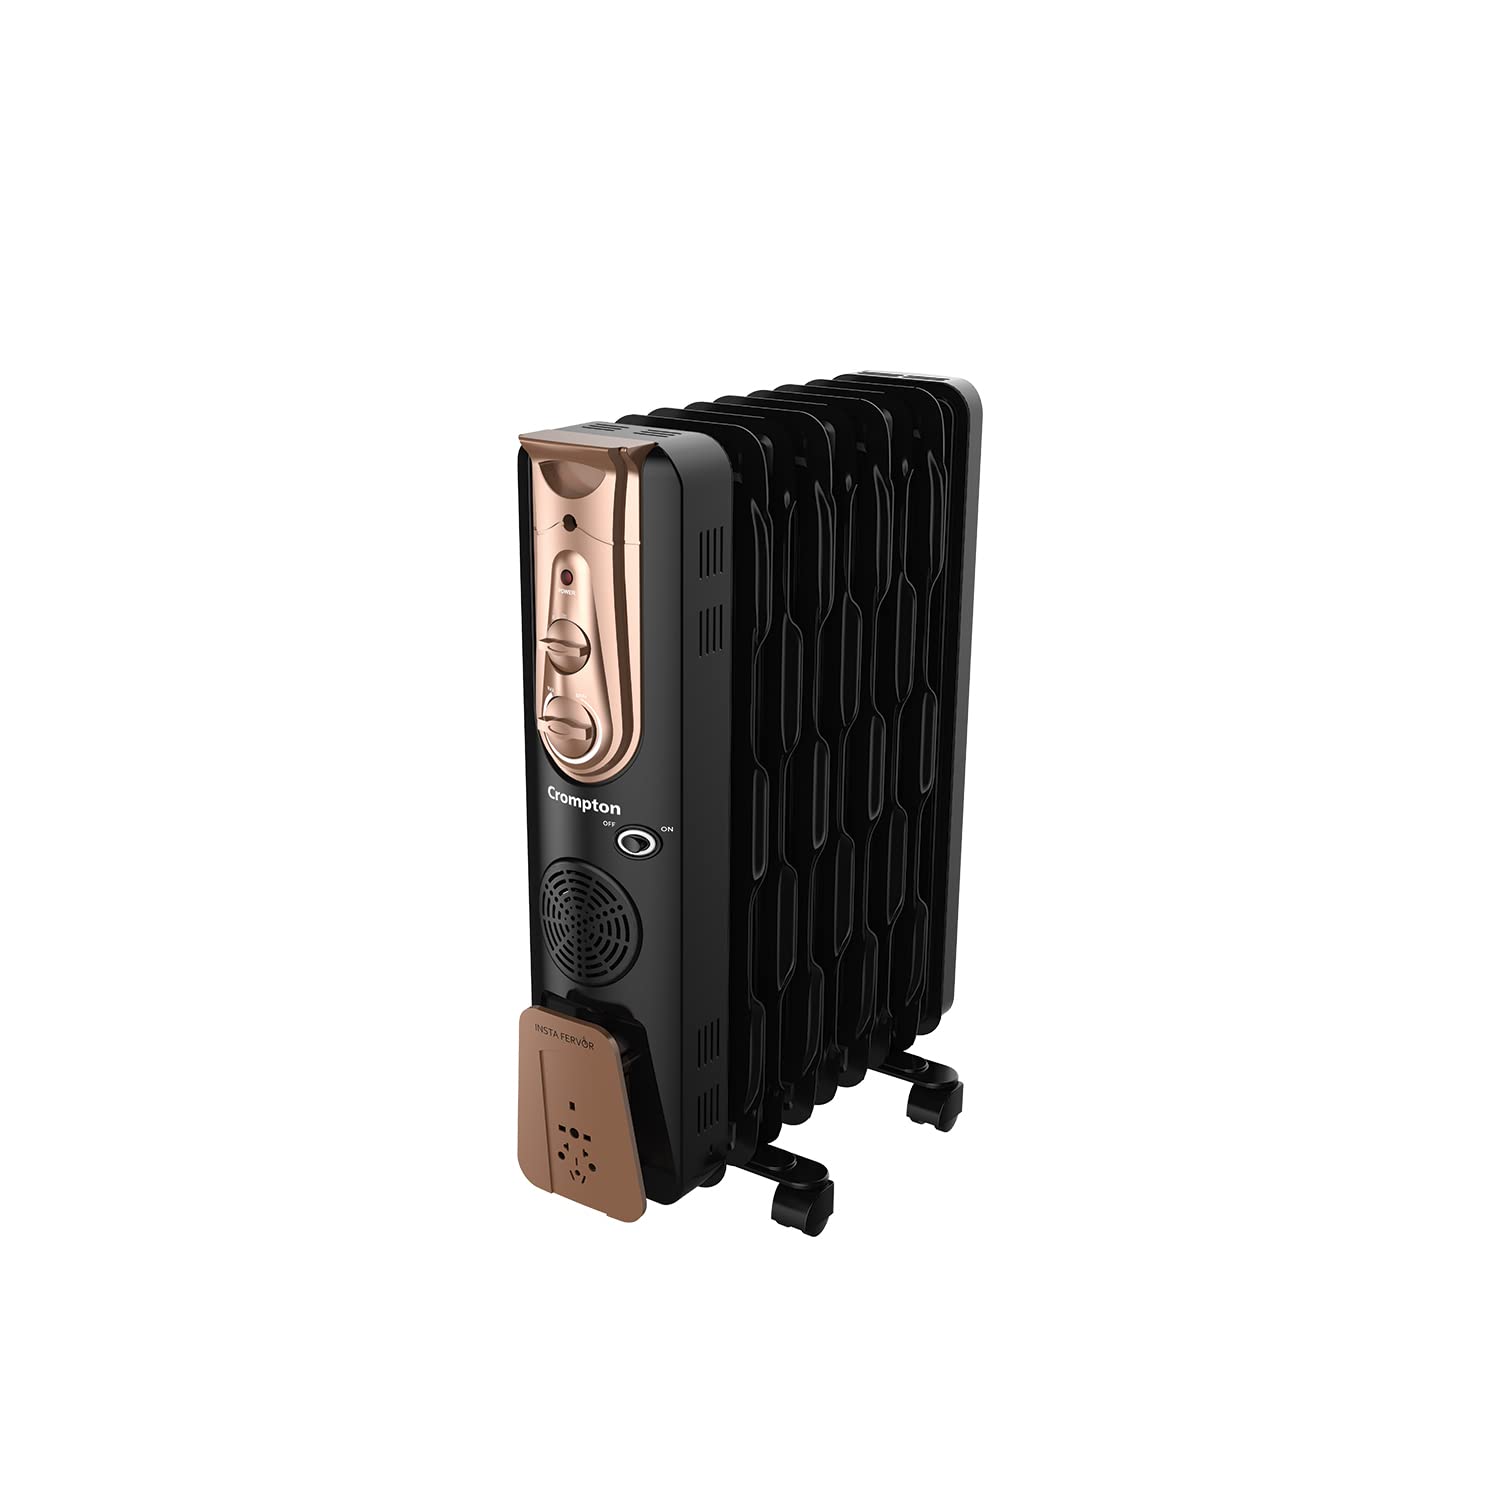 Crompton Insta Fervor 13 Fins 2900 Watt Oil Field Heater With Ptc Fan, Black Gold - Mahajan Electronics Online